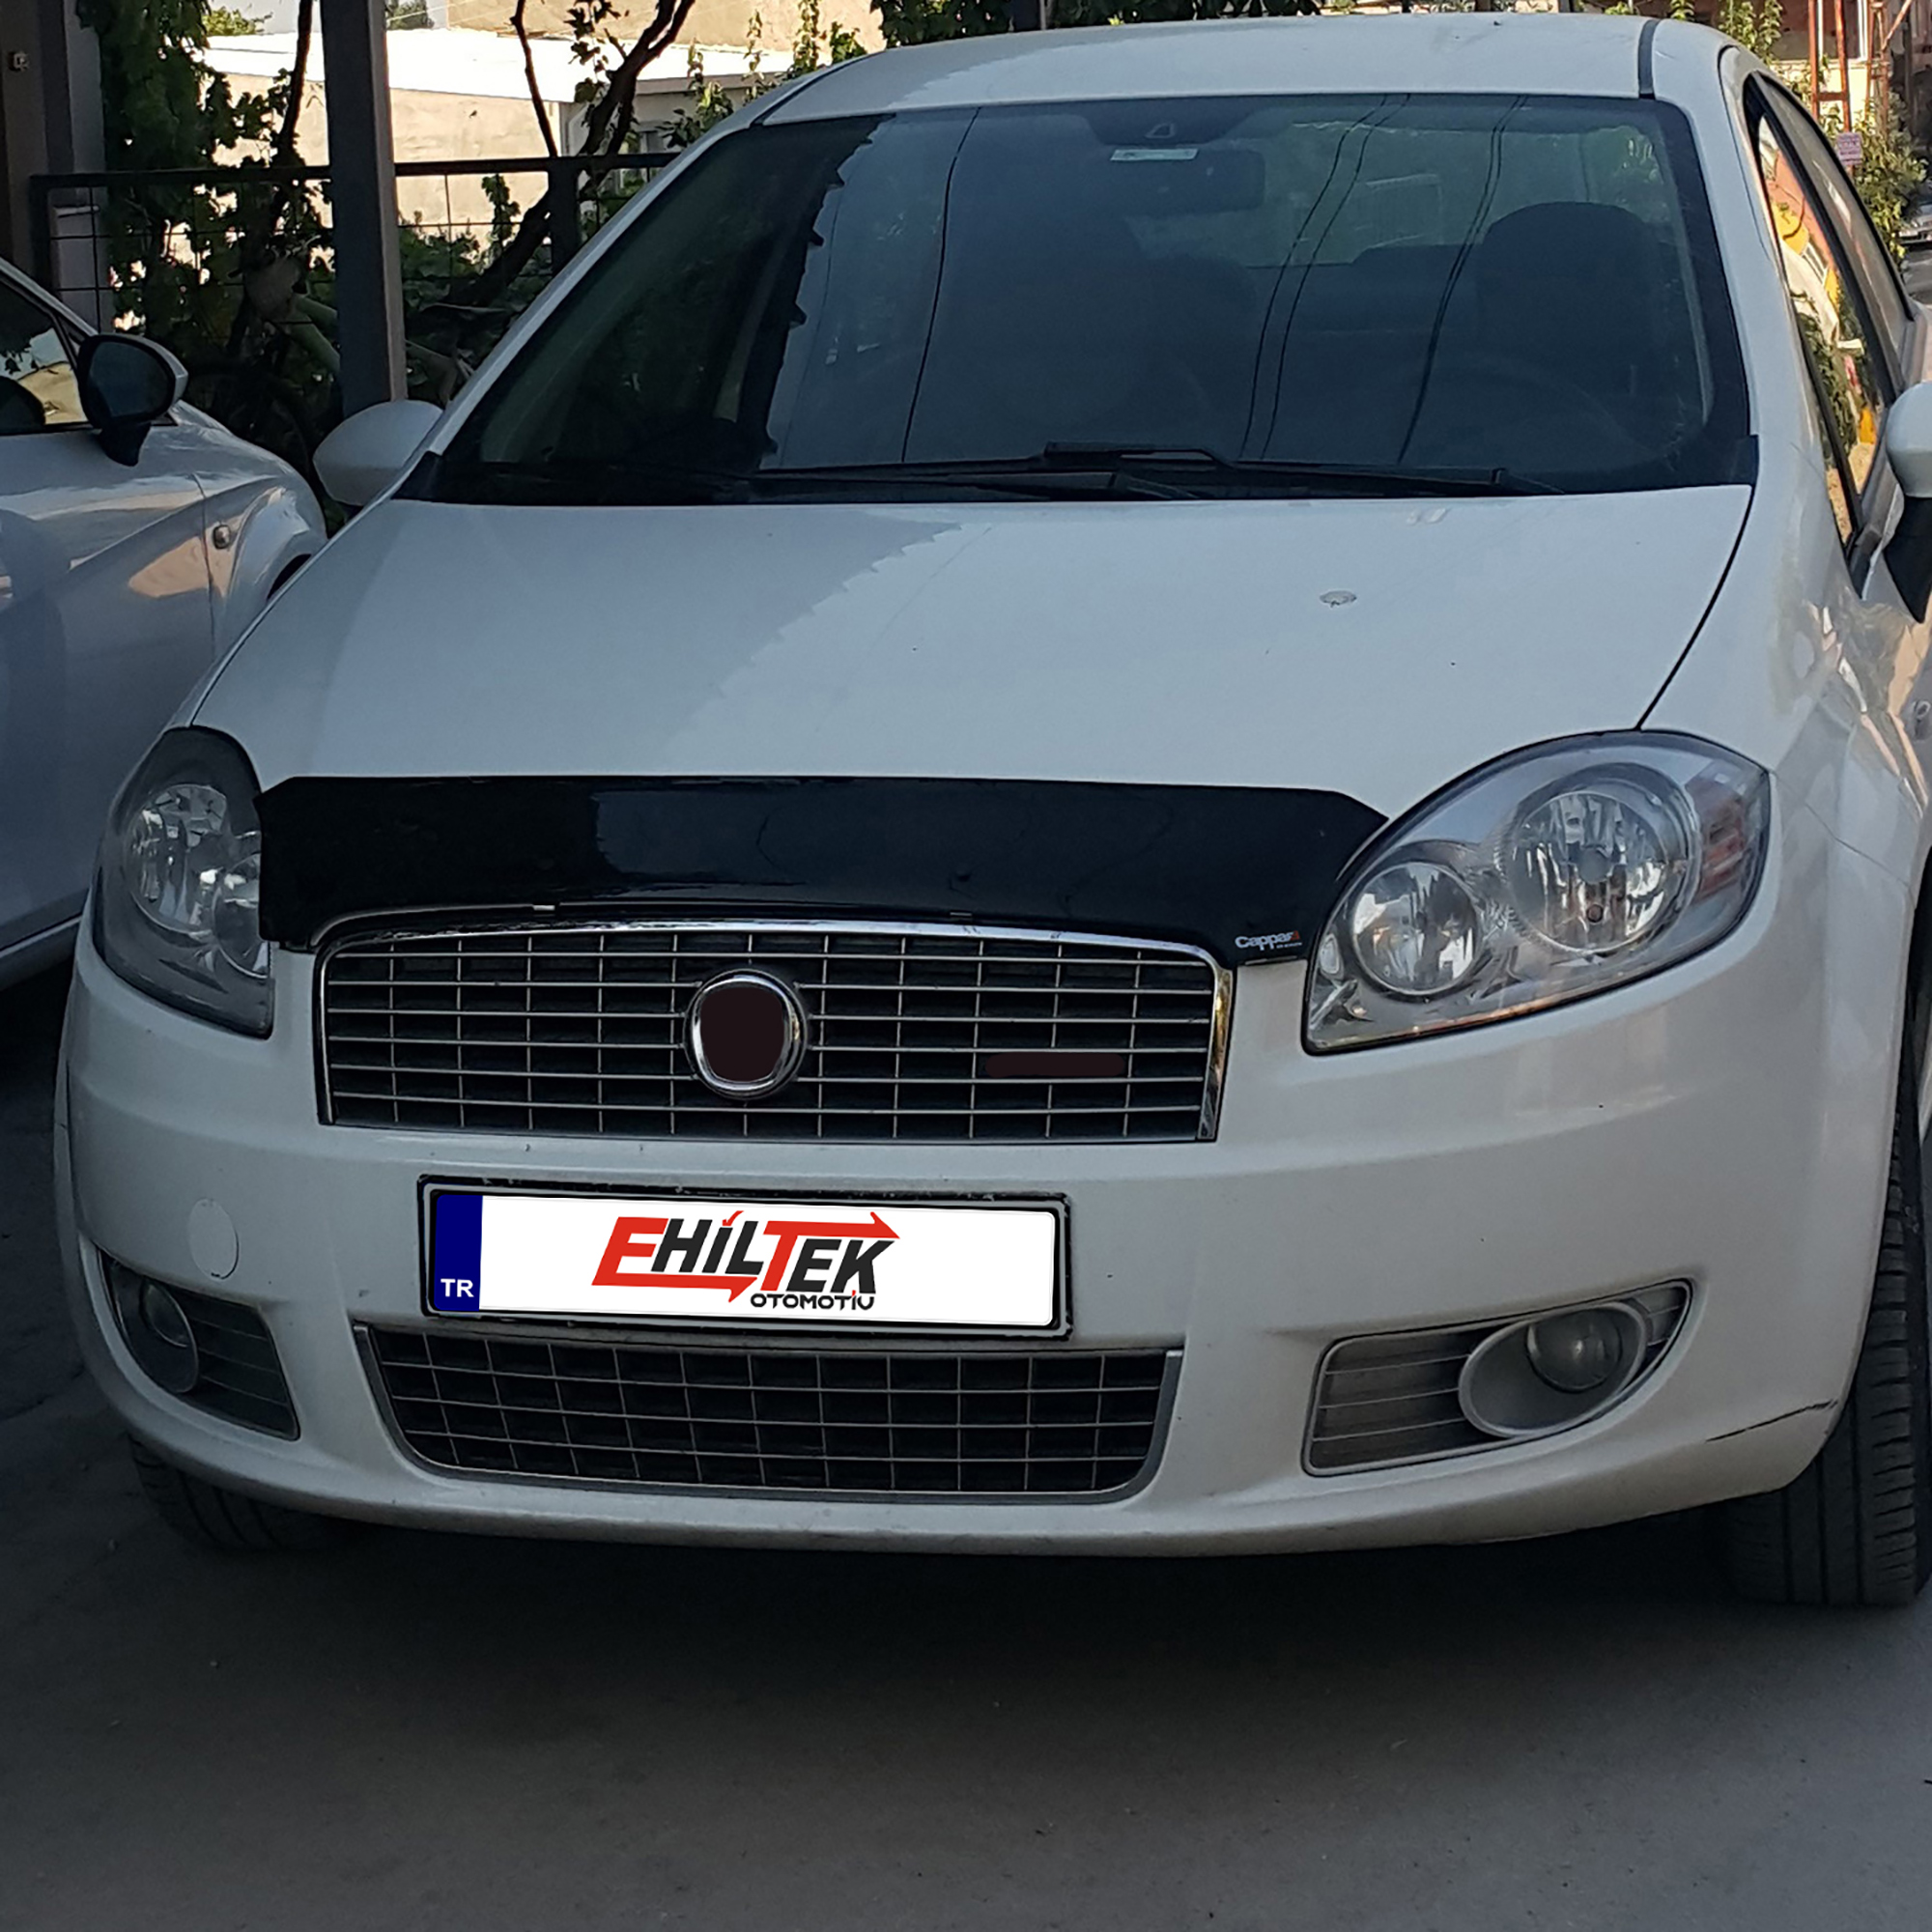 Fiat Linea (2007-2018) - Ön Kaput Rüzgarlığı - (1 Parça ABS Plastik) - (SD-4 mm)